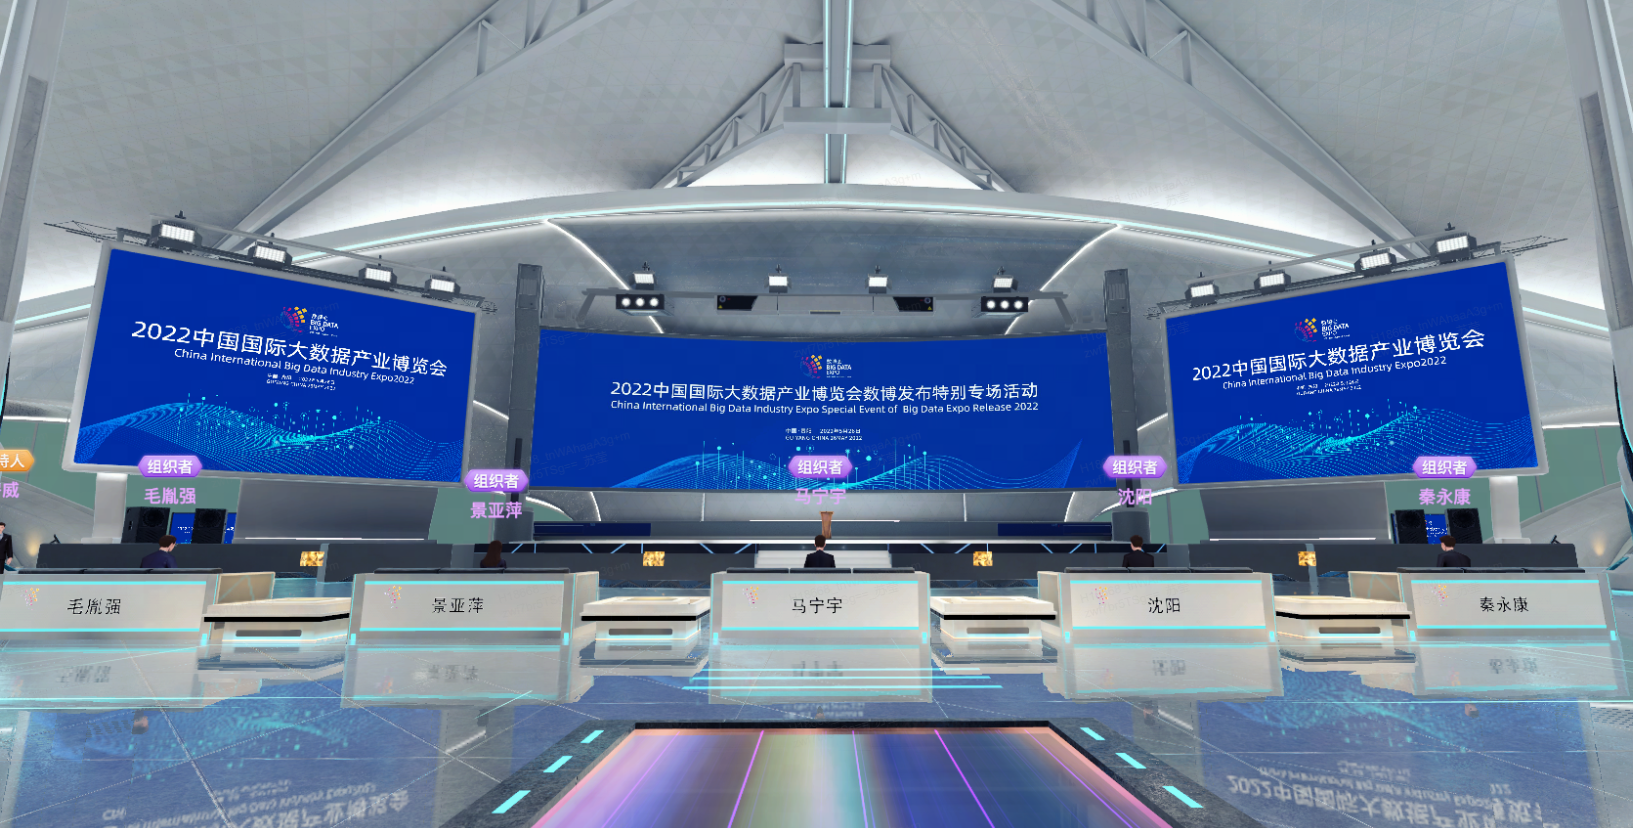 图片展示了一个现代化的室内环境，有多个屏幕显示2022年信息，前方有工作台和座位，整体设计科技感强。